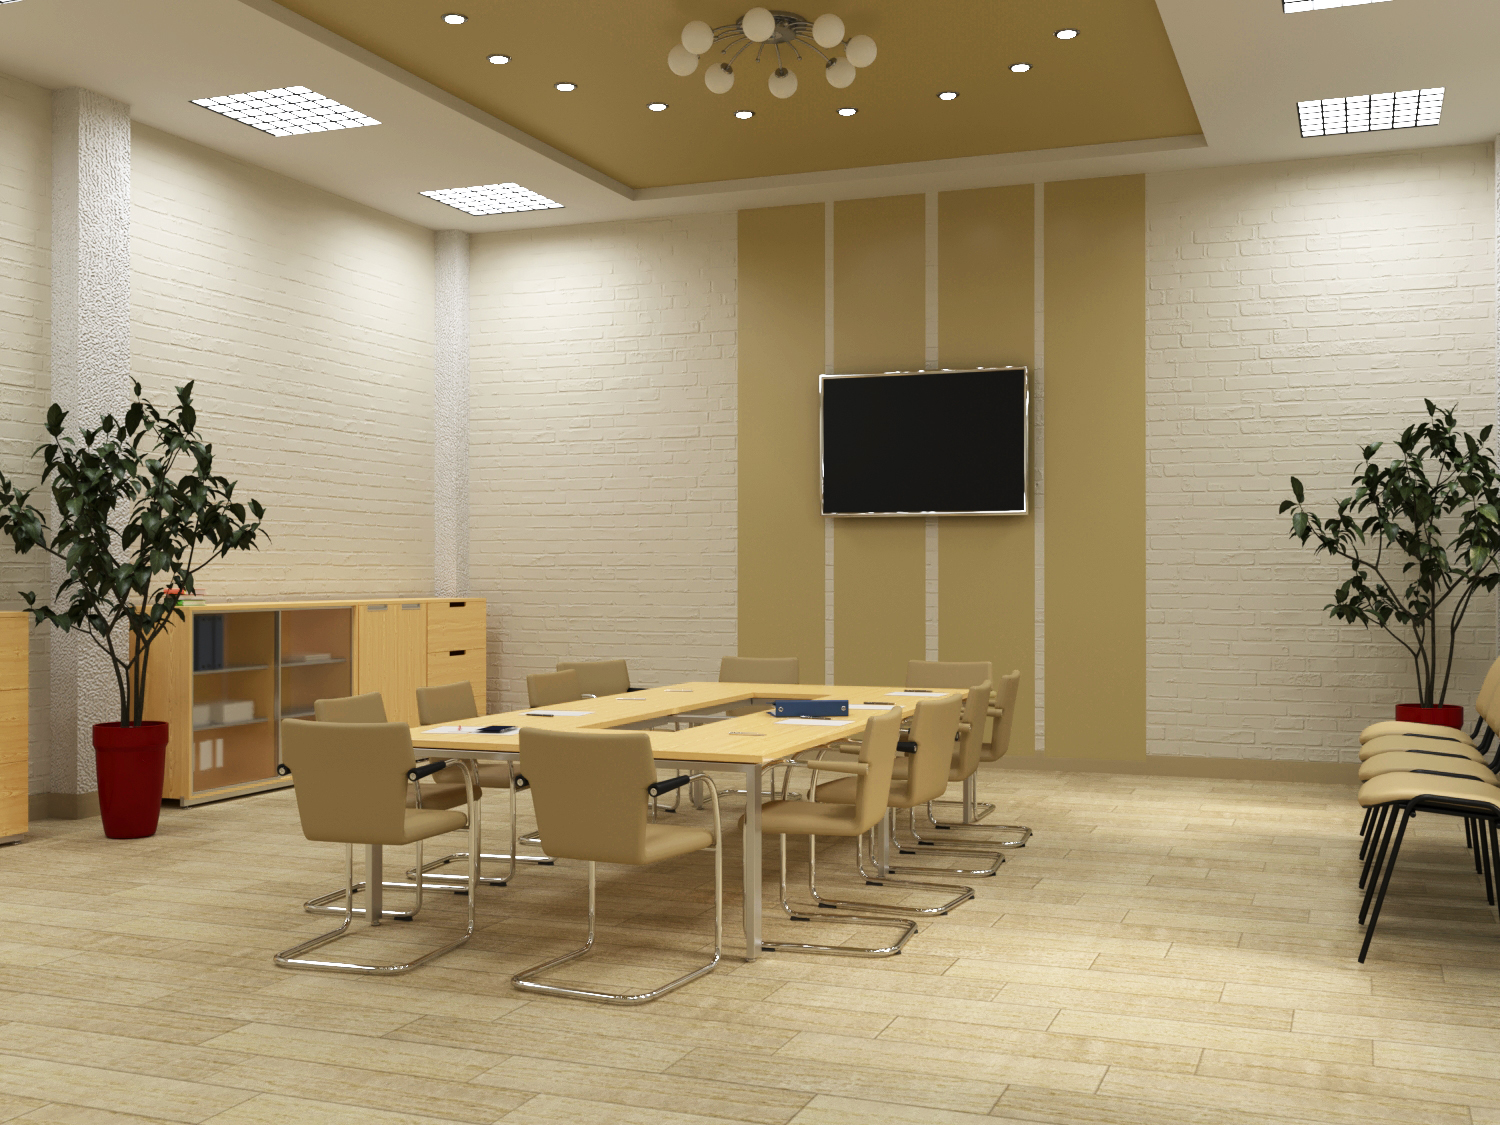 Ricostruzione di negozio per uffici. in 3d max corona render immagine